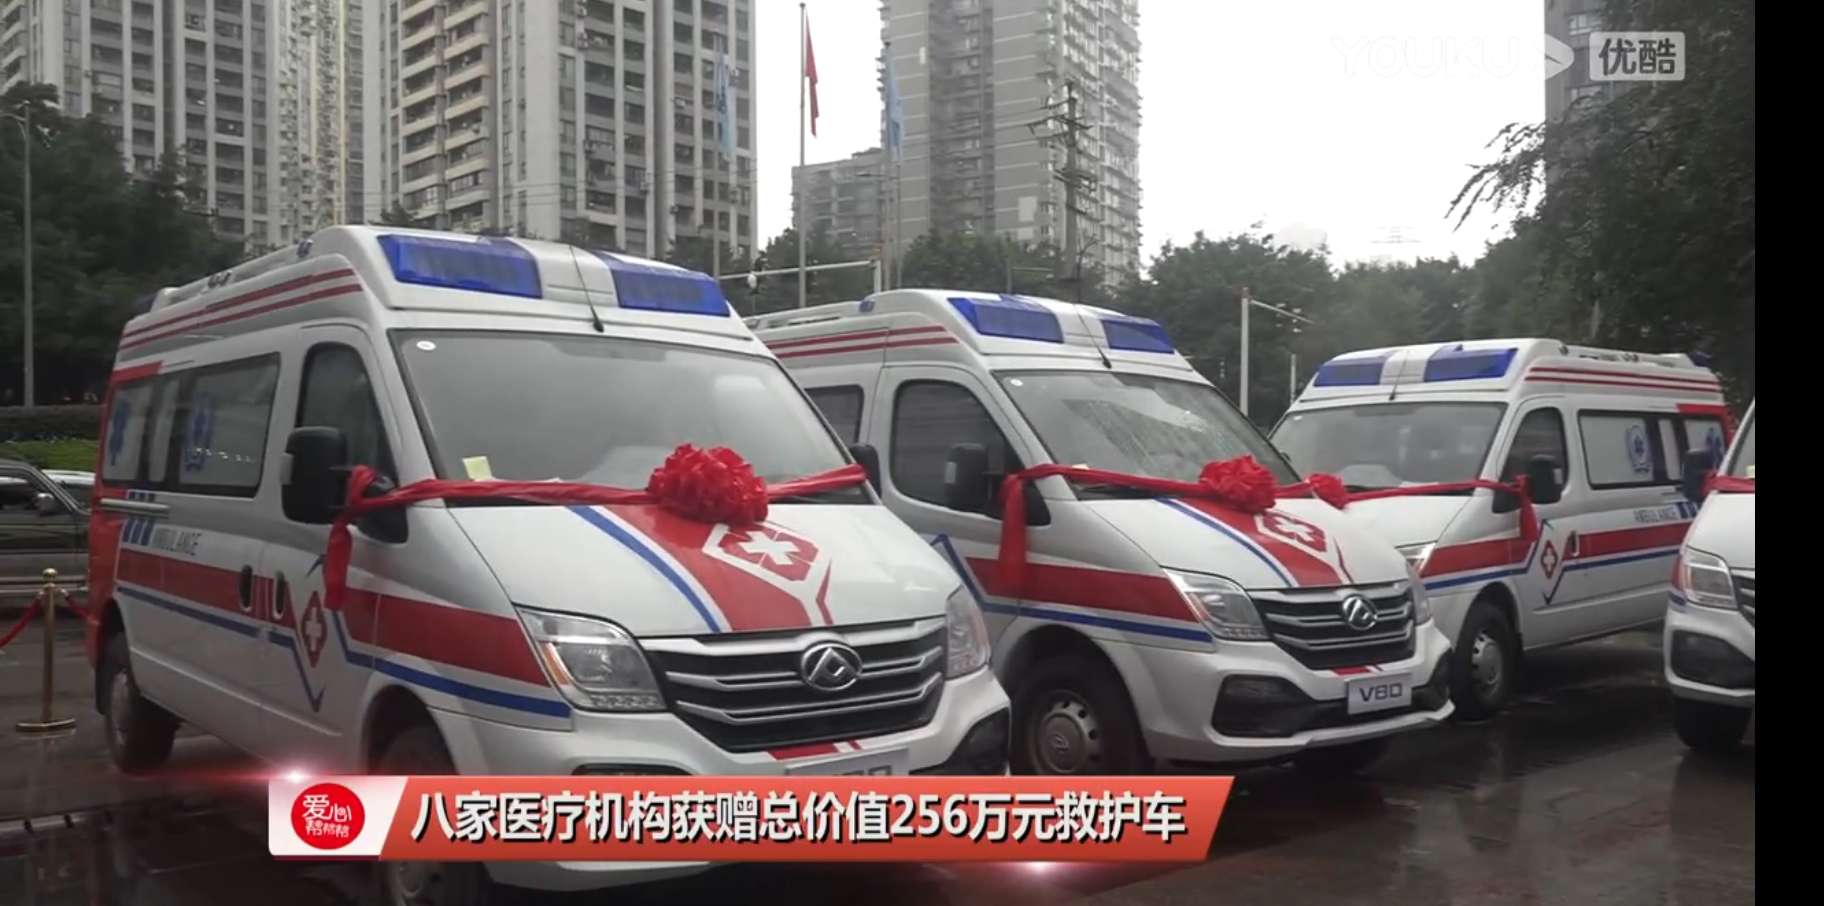 八家醫療機構獲贈總價值256萬元救護車